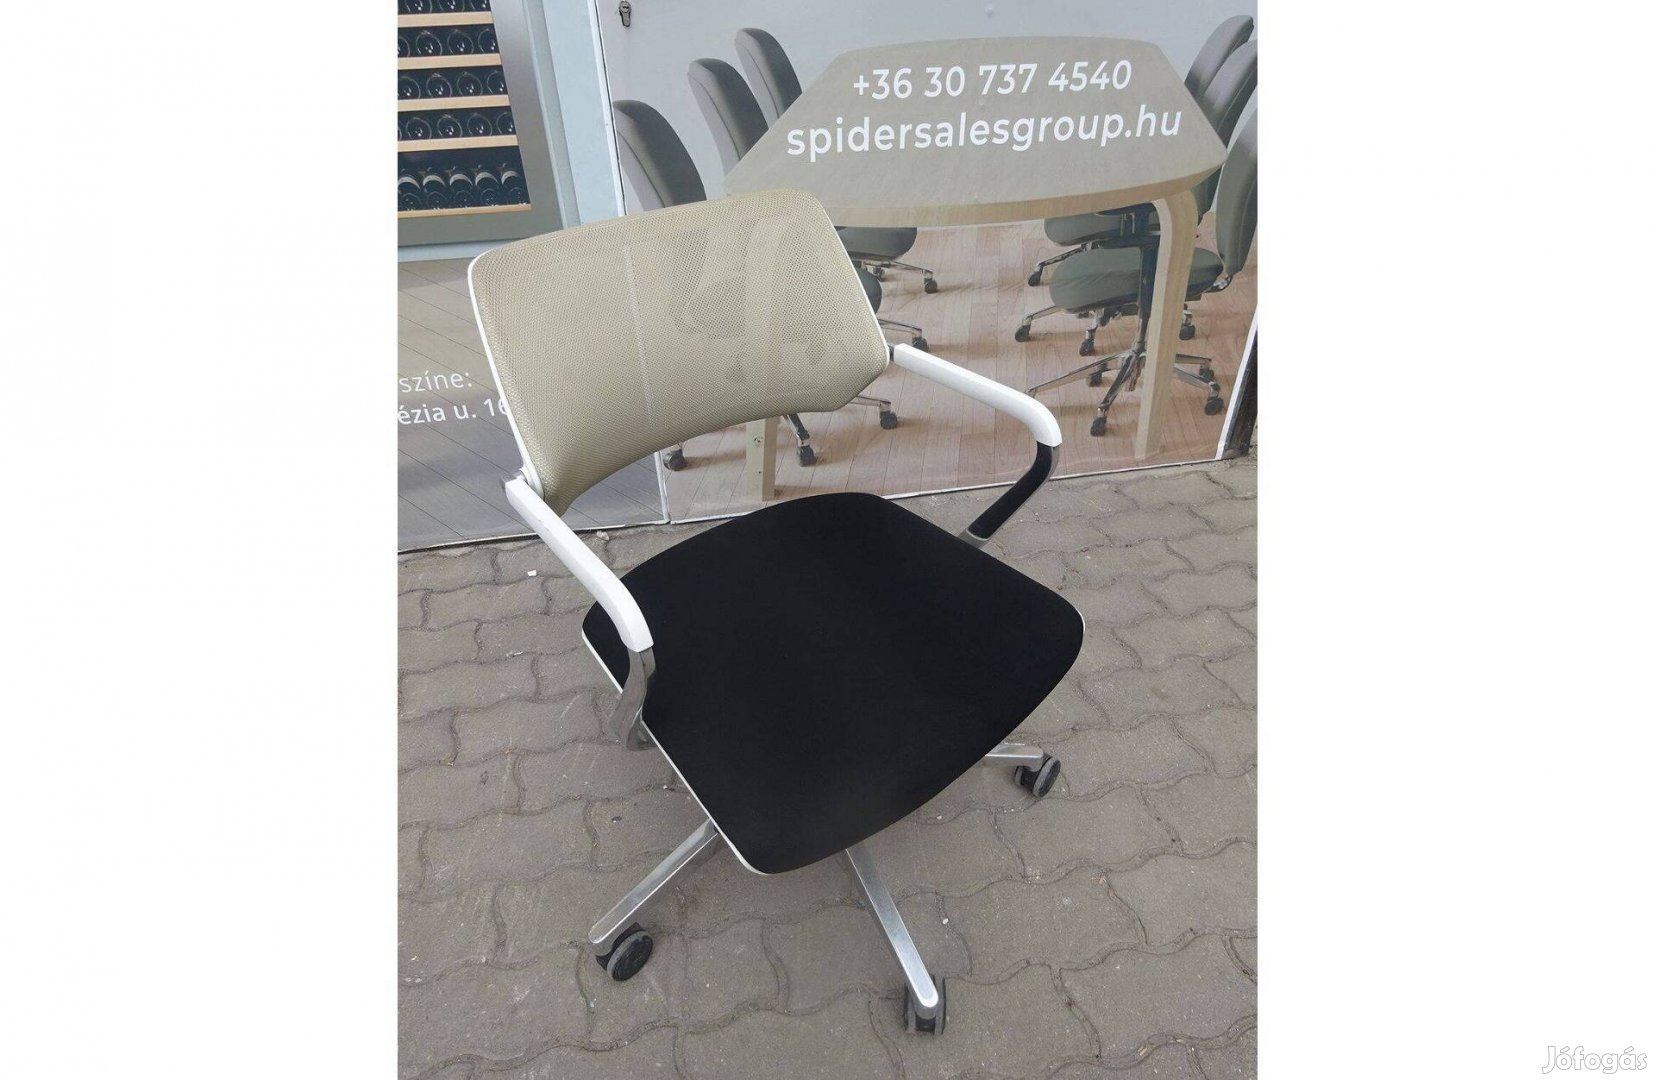 Steelcase Qivi gurulós szék, tárgyalószék, vendégszék - használt